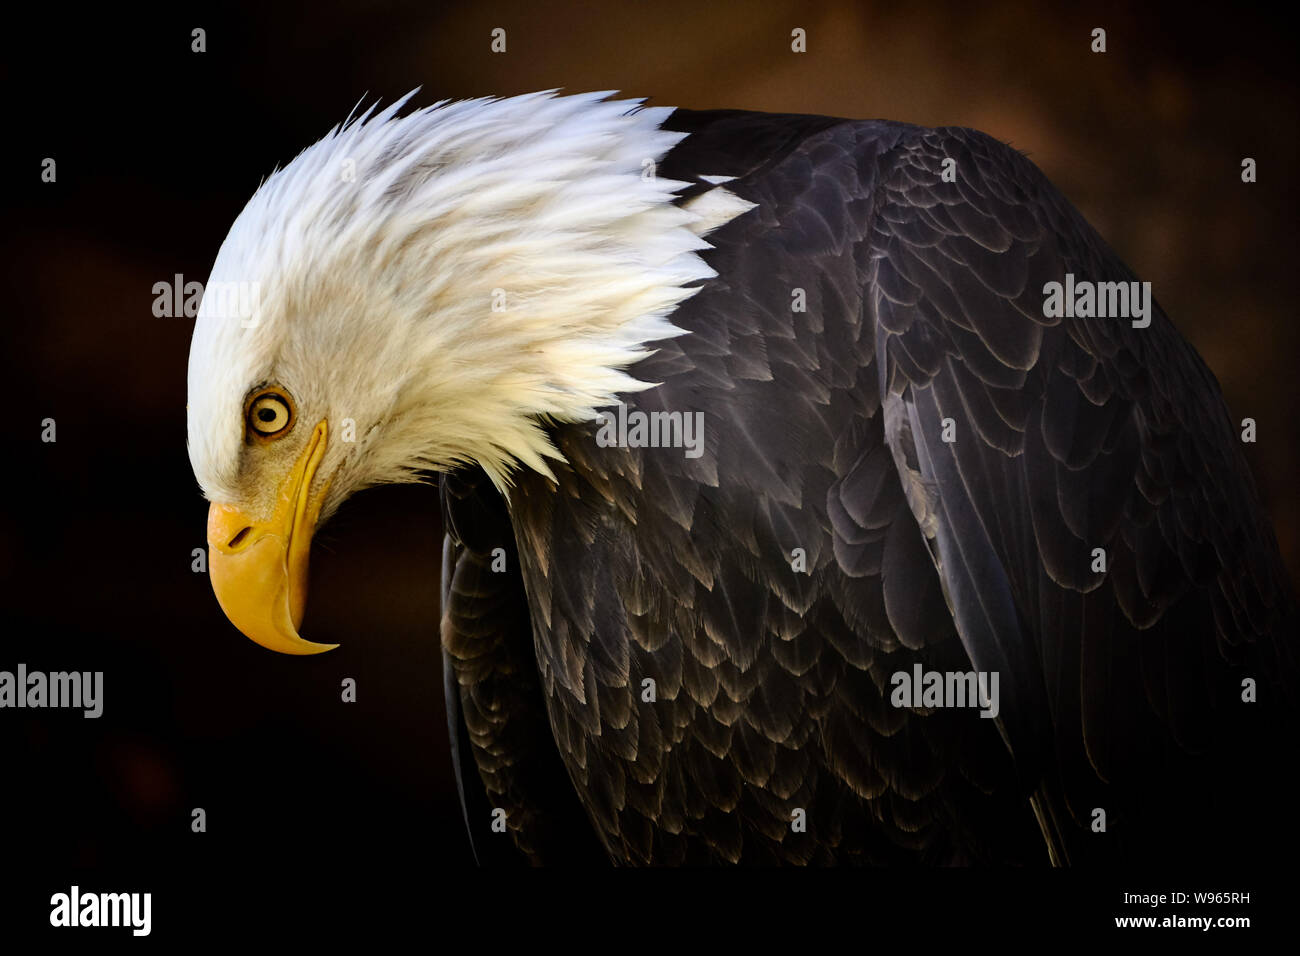 Close-up of a Bald eagle (Haliaeetus leucocephalus) Stock Photo